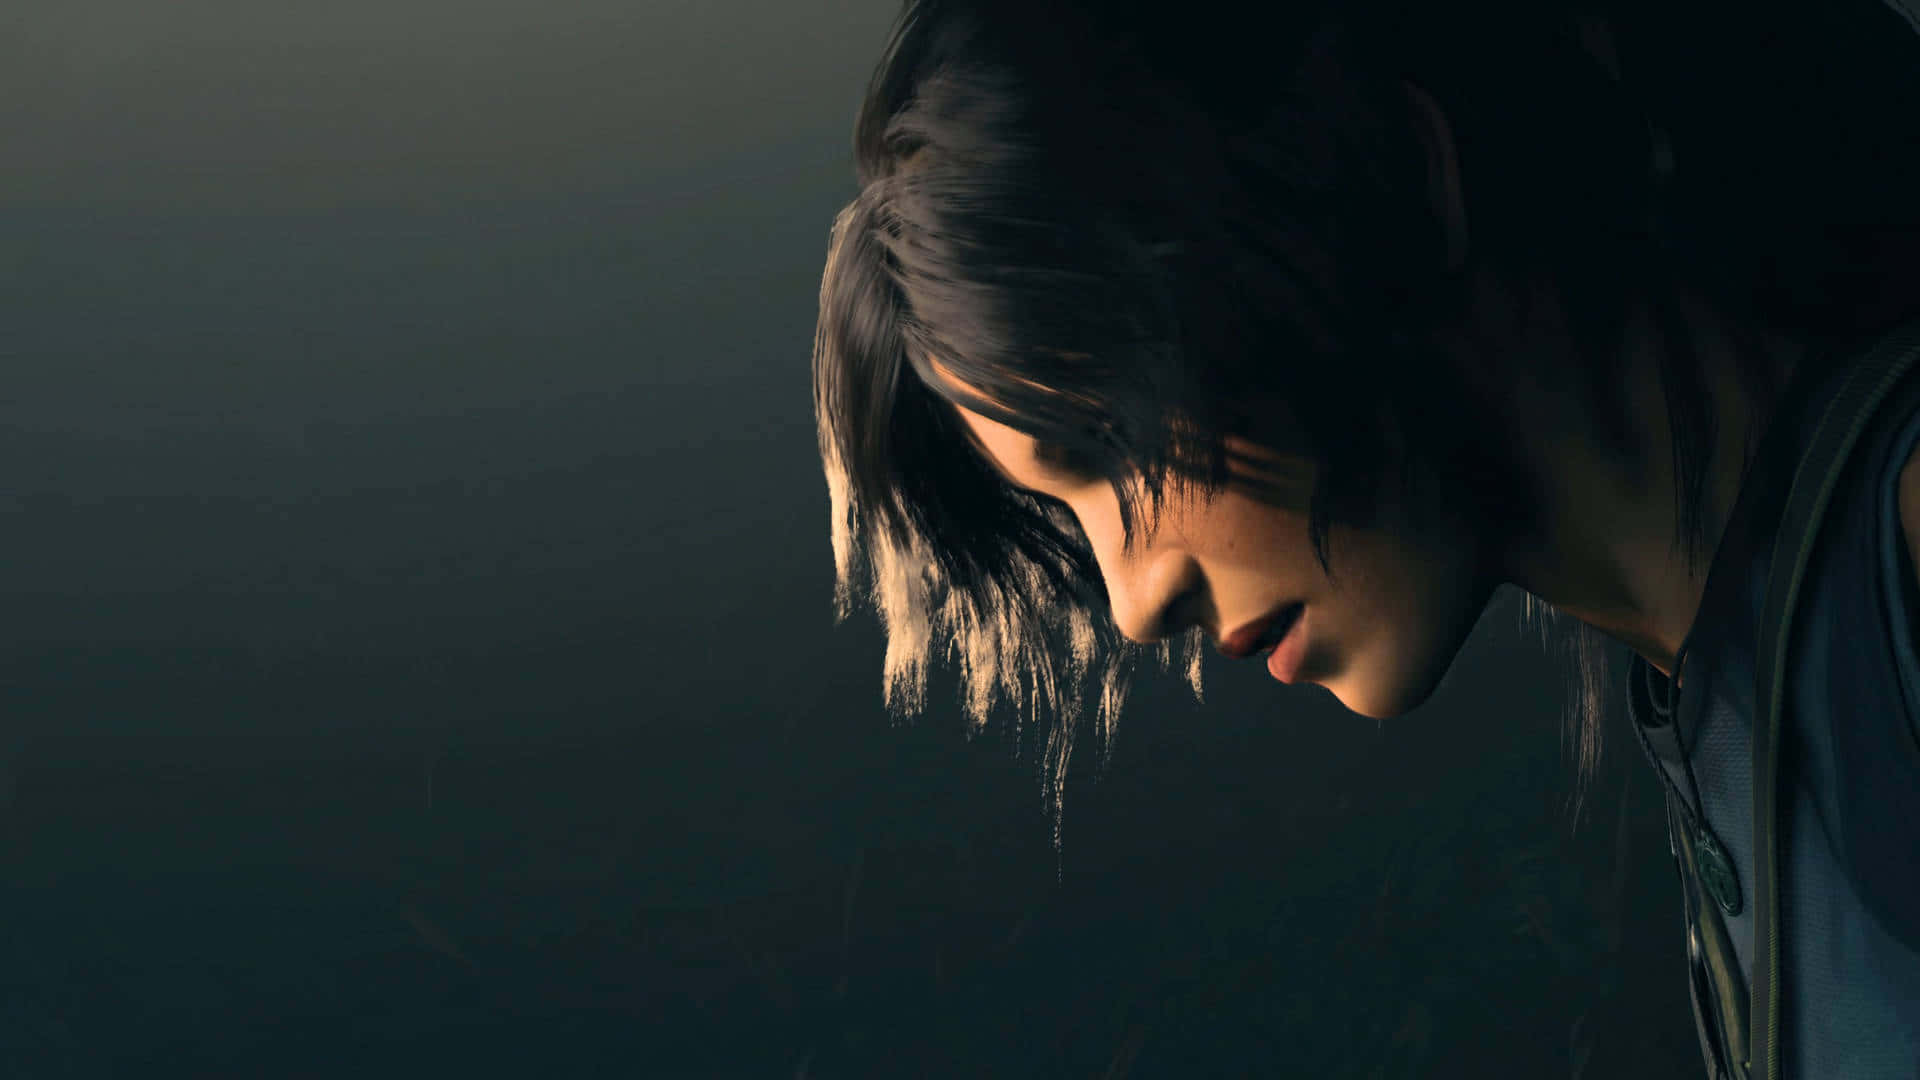 Lamejor Imagen De Fondo De Shadow Of The Tomb Raider Con Una Escena De Pelea